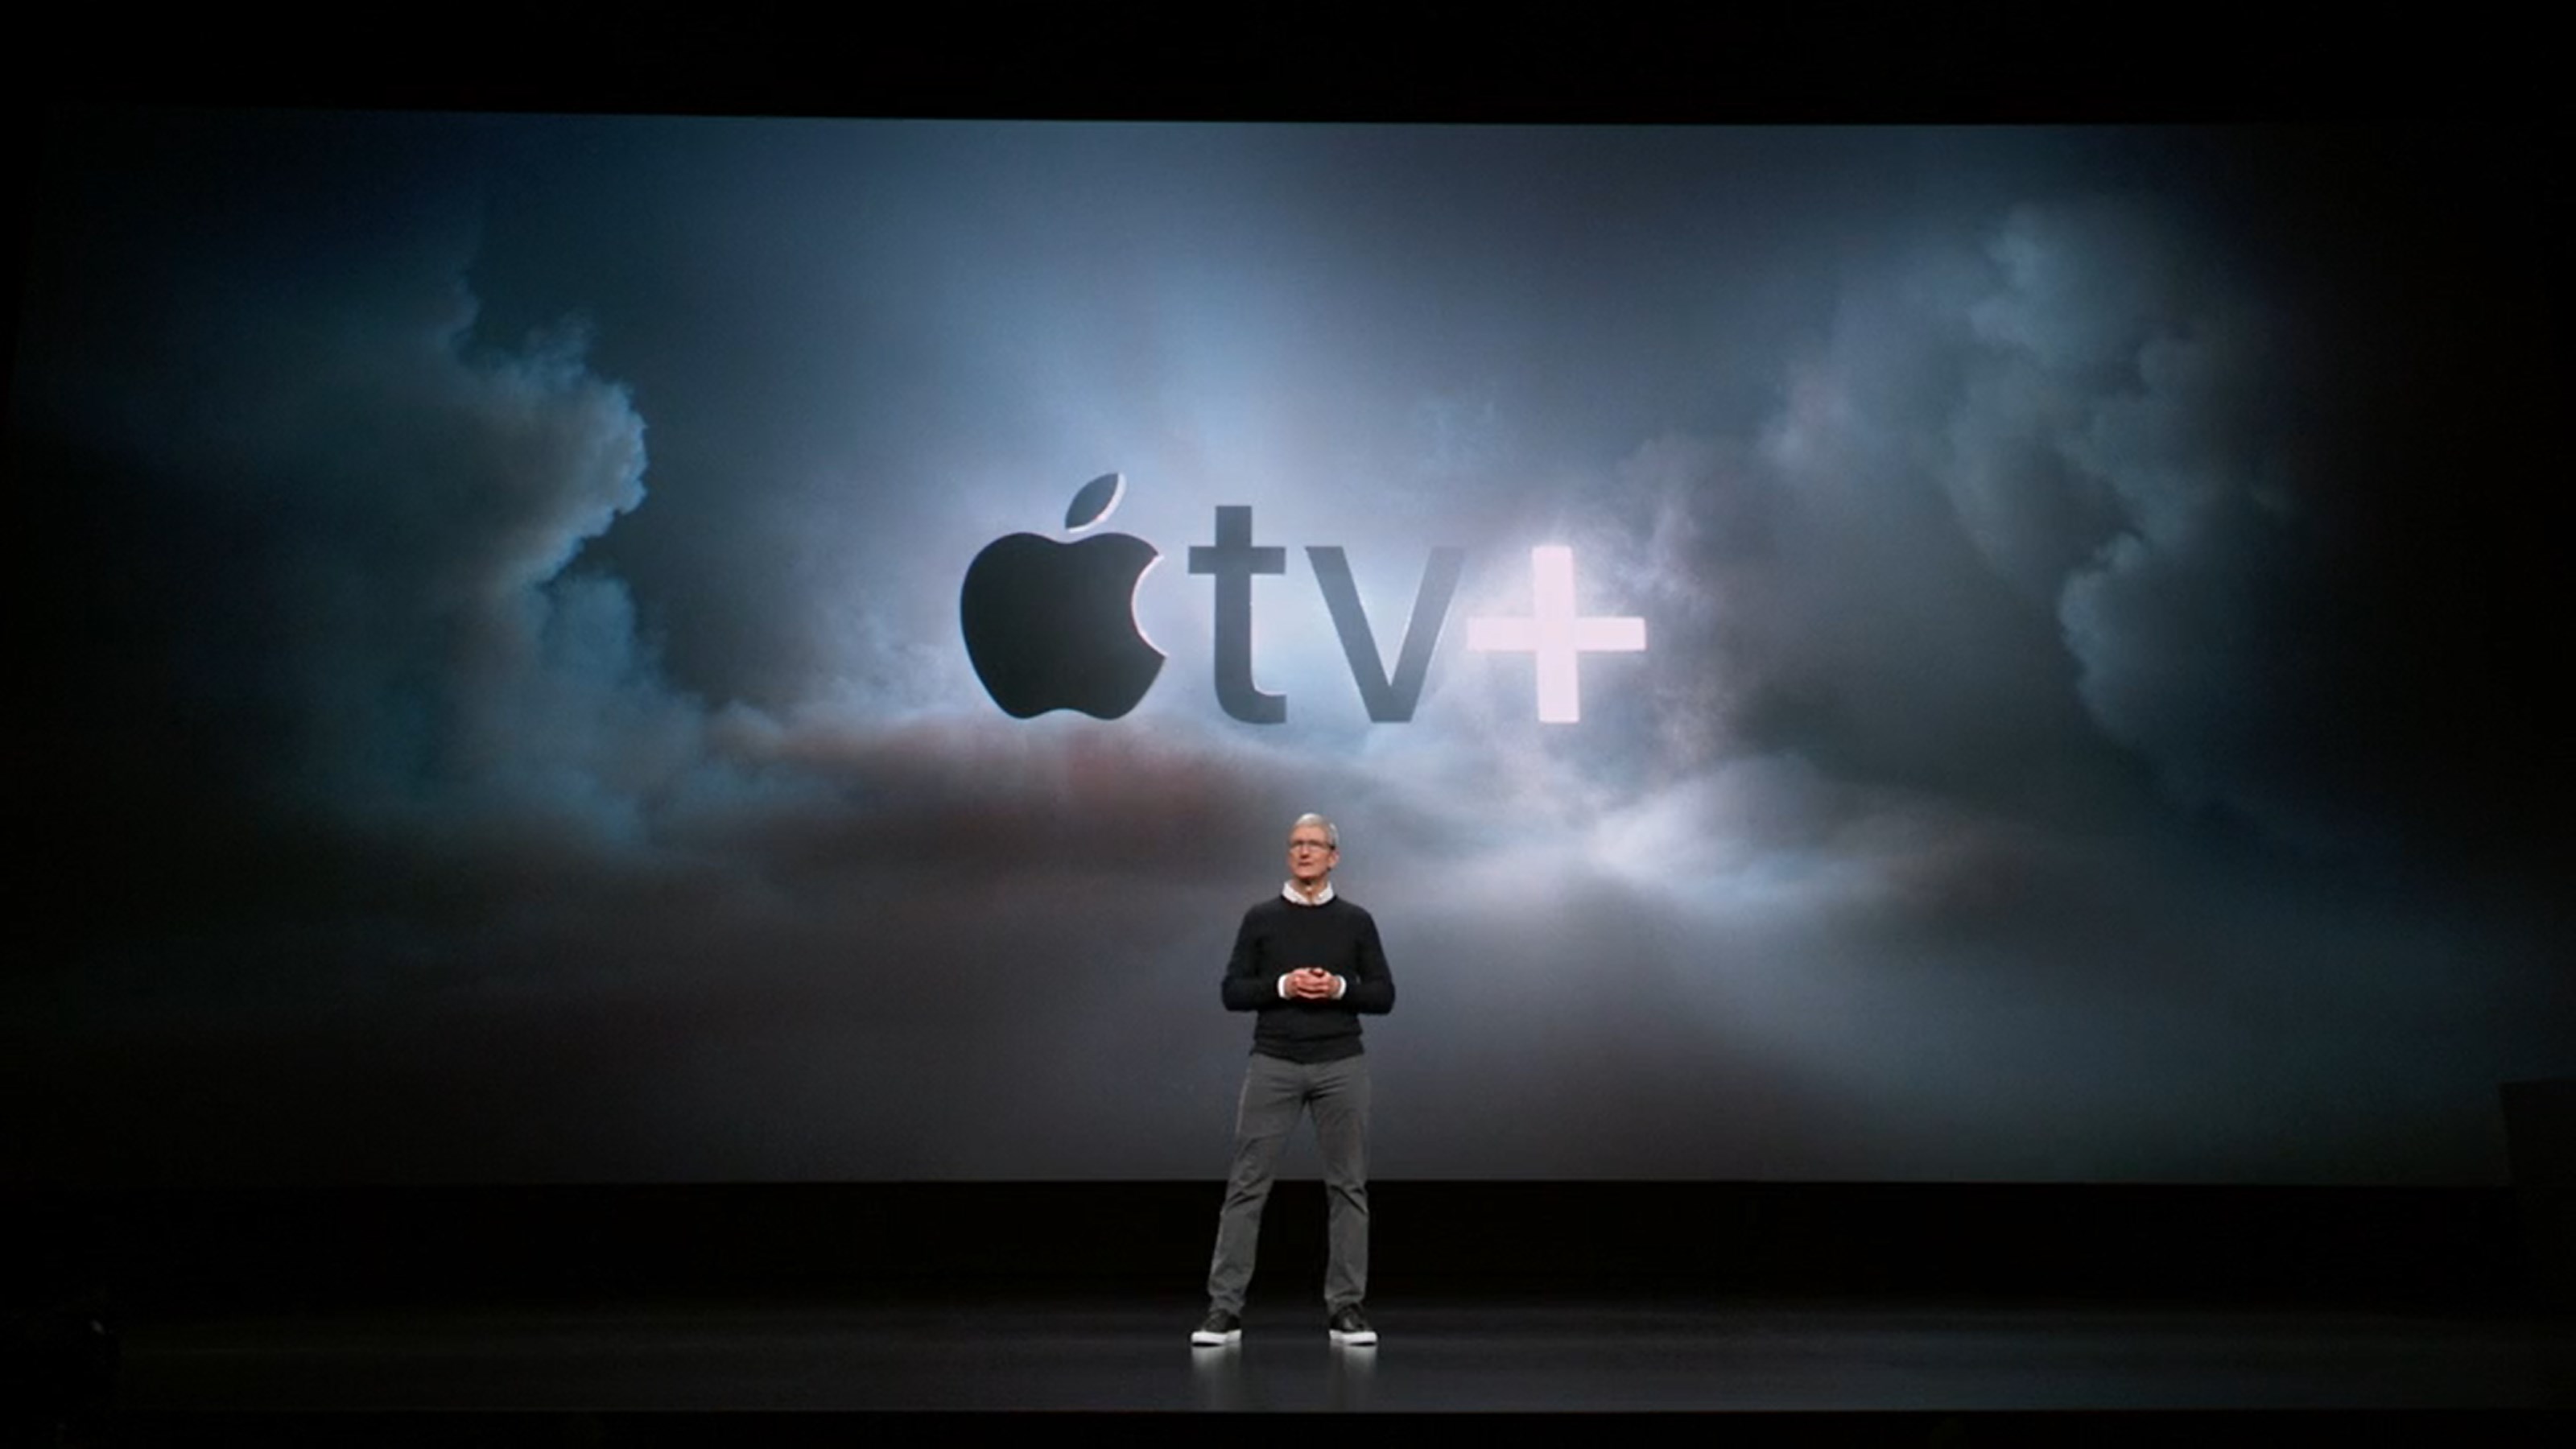 الخدمات 22 يناير 2020
Apple يريد استخدام البودكاست للترويج Apple تلفزيون +